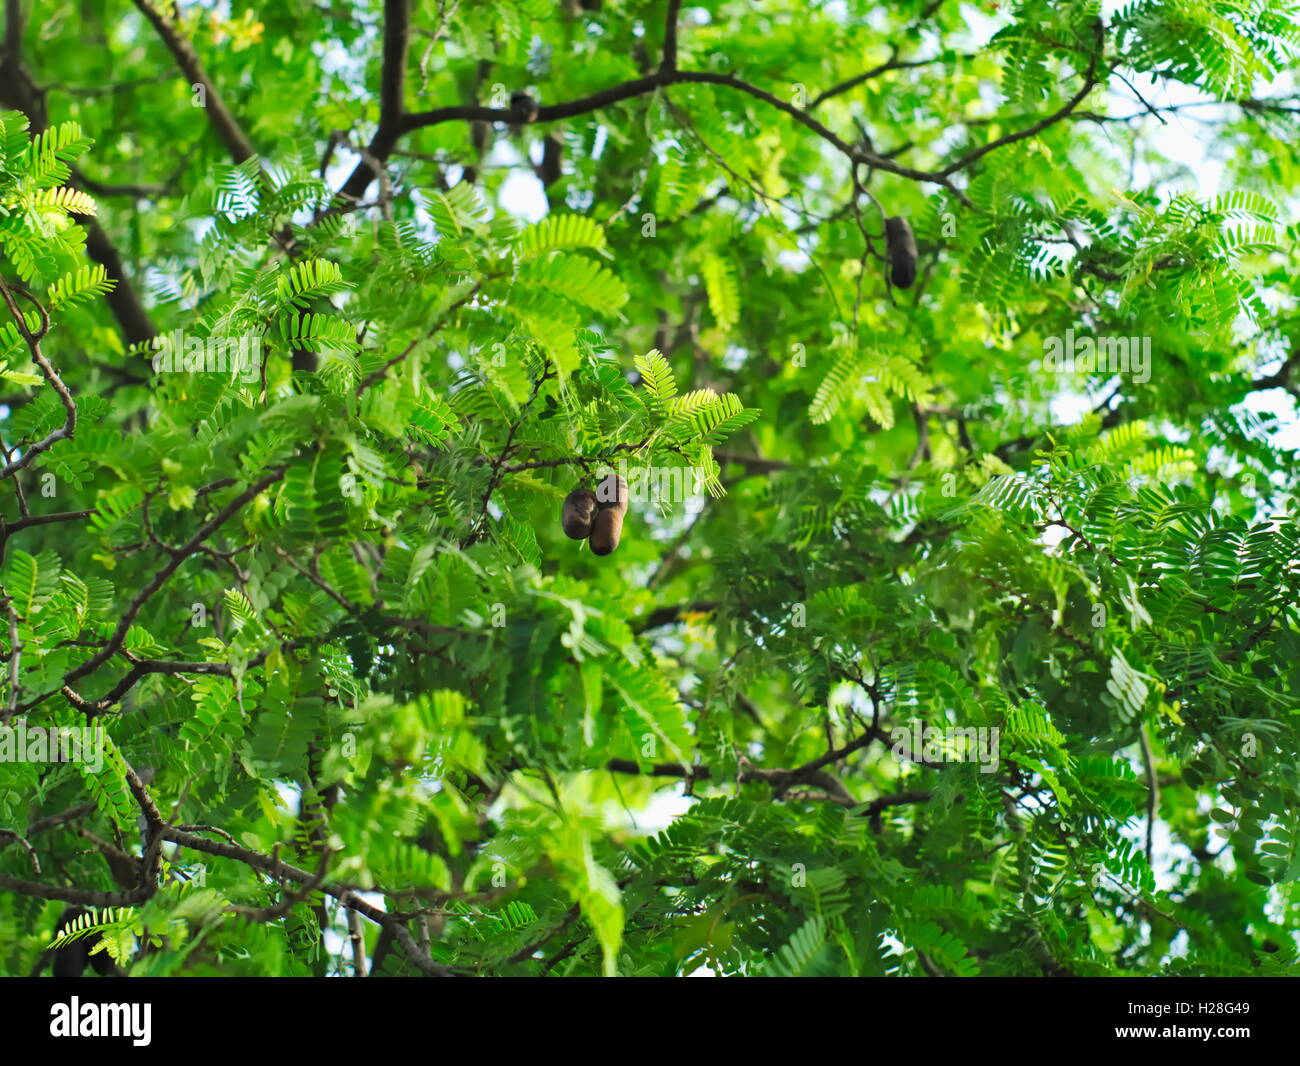 Albero di tamarindo o Tamarindus indica che mostra i suoi rami, foglie e frutti Foto Stock